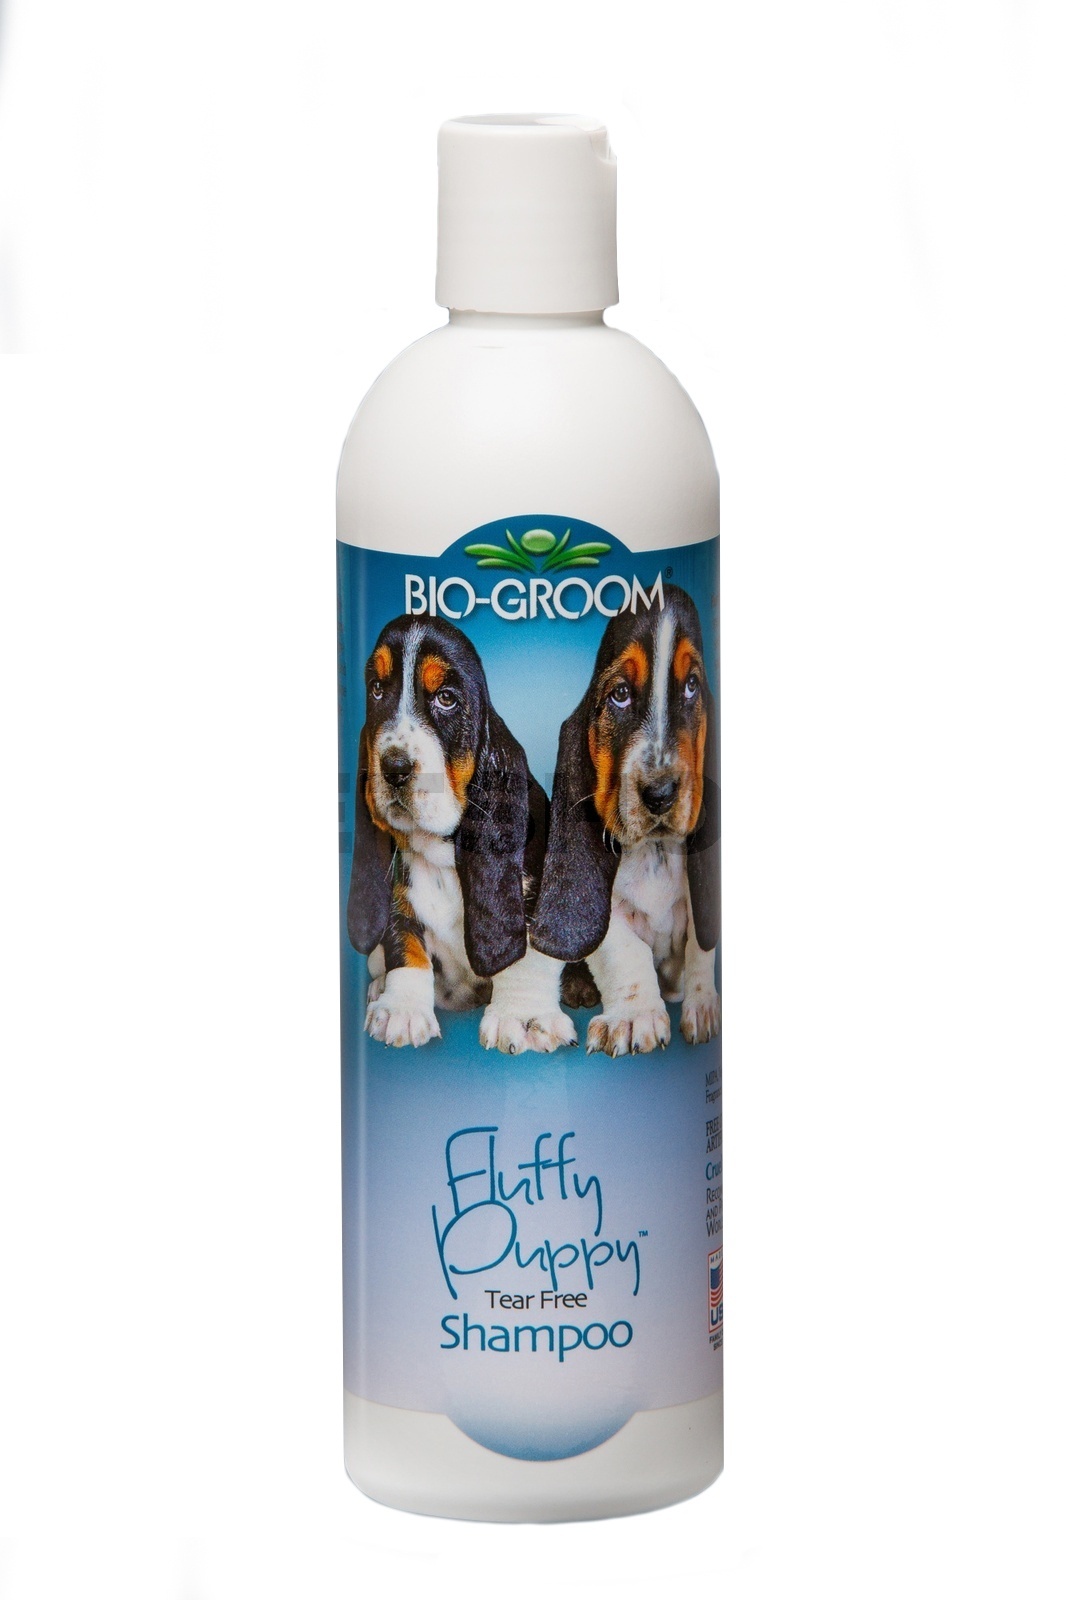 Biogroom Biogroom шампунь для щенков и котят, концентрат 1:2, 1 литр готового шампуня (355 г) цена и фото